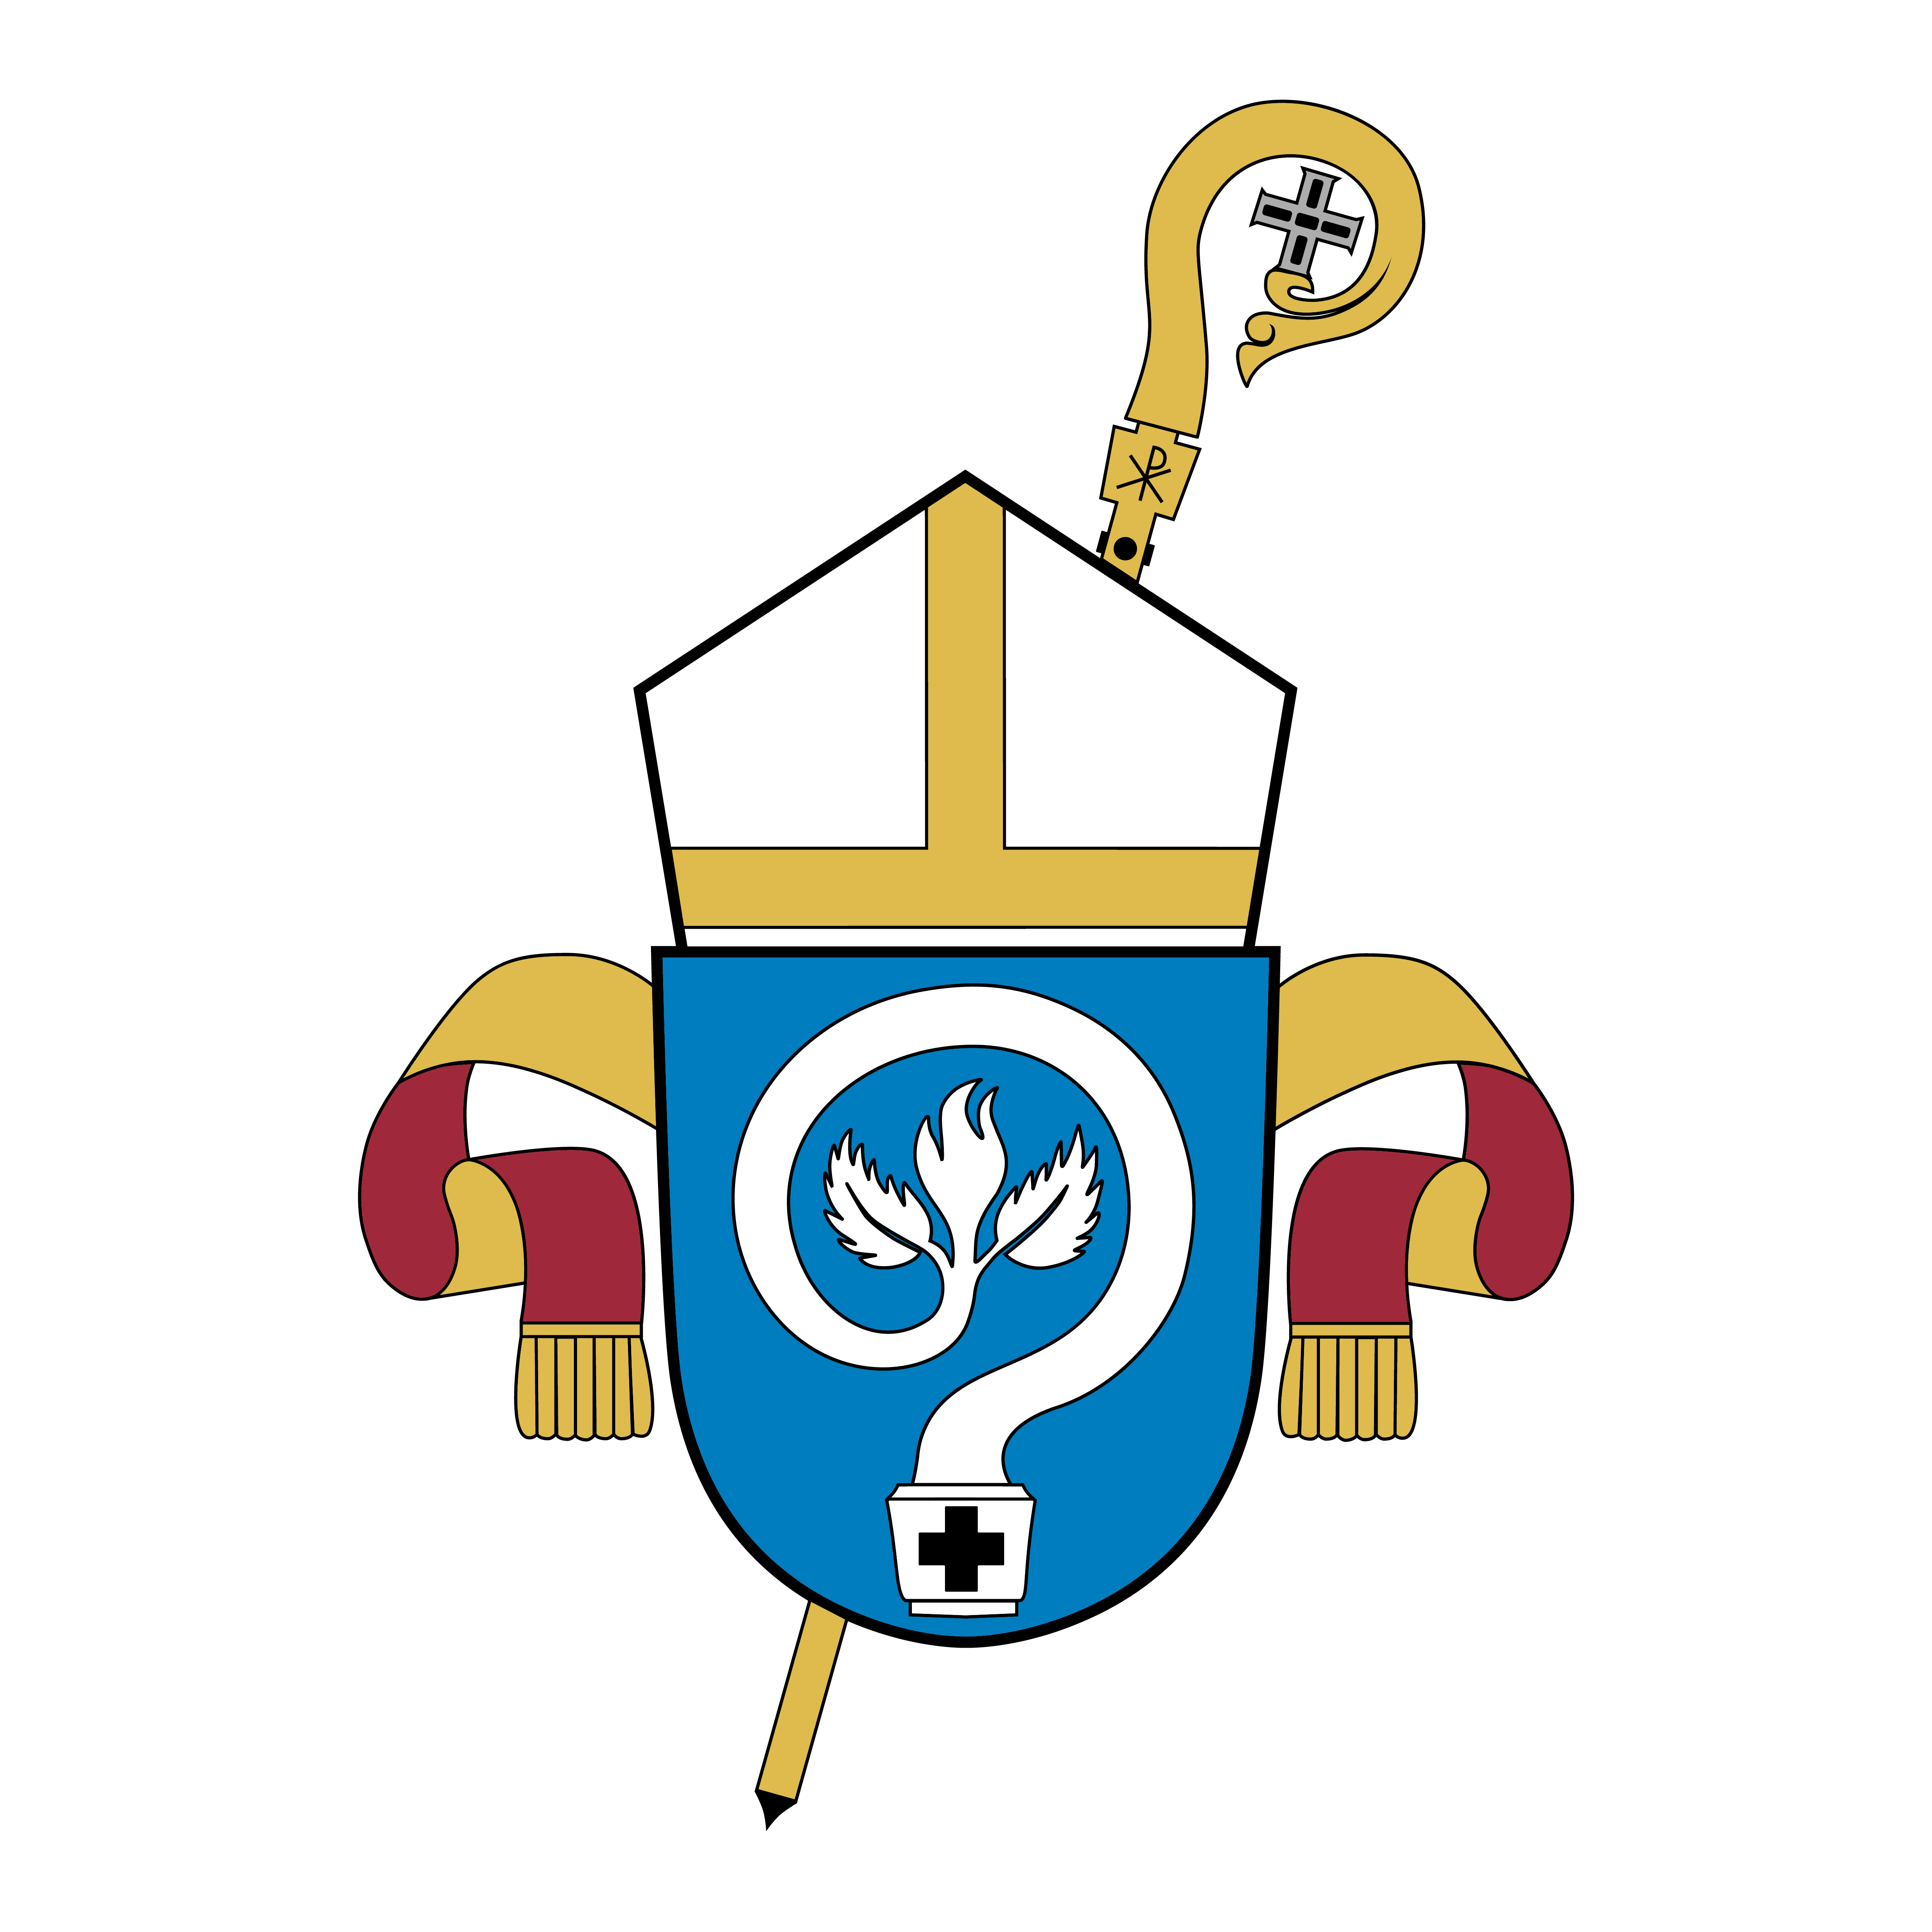 Piispan logo